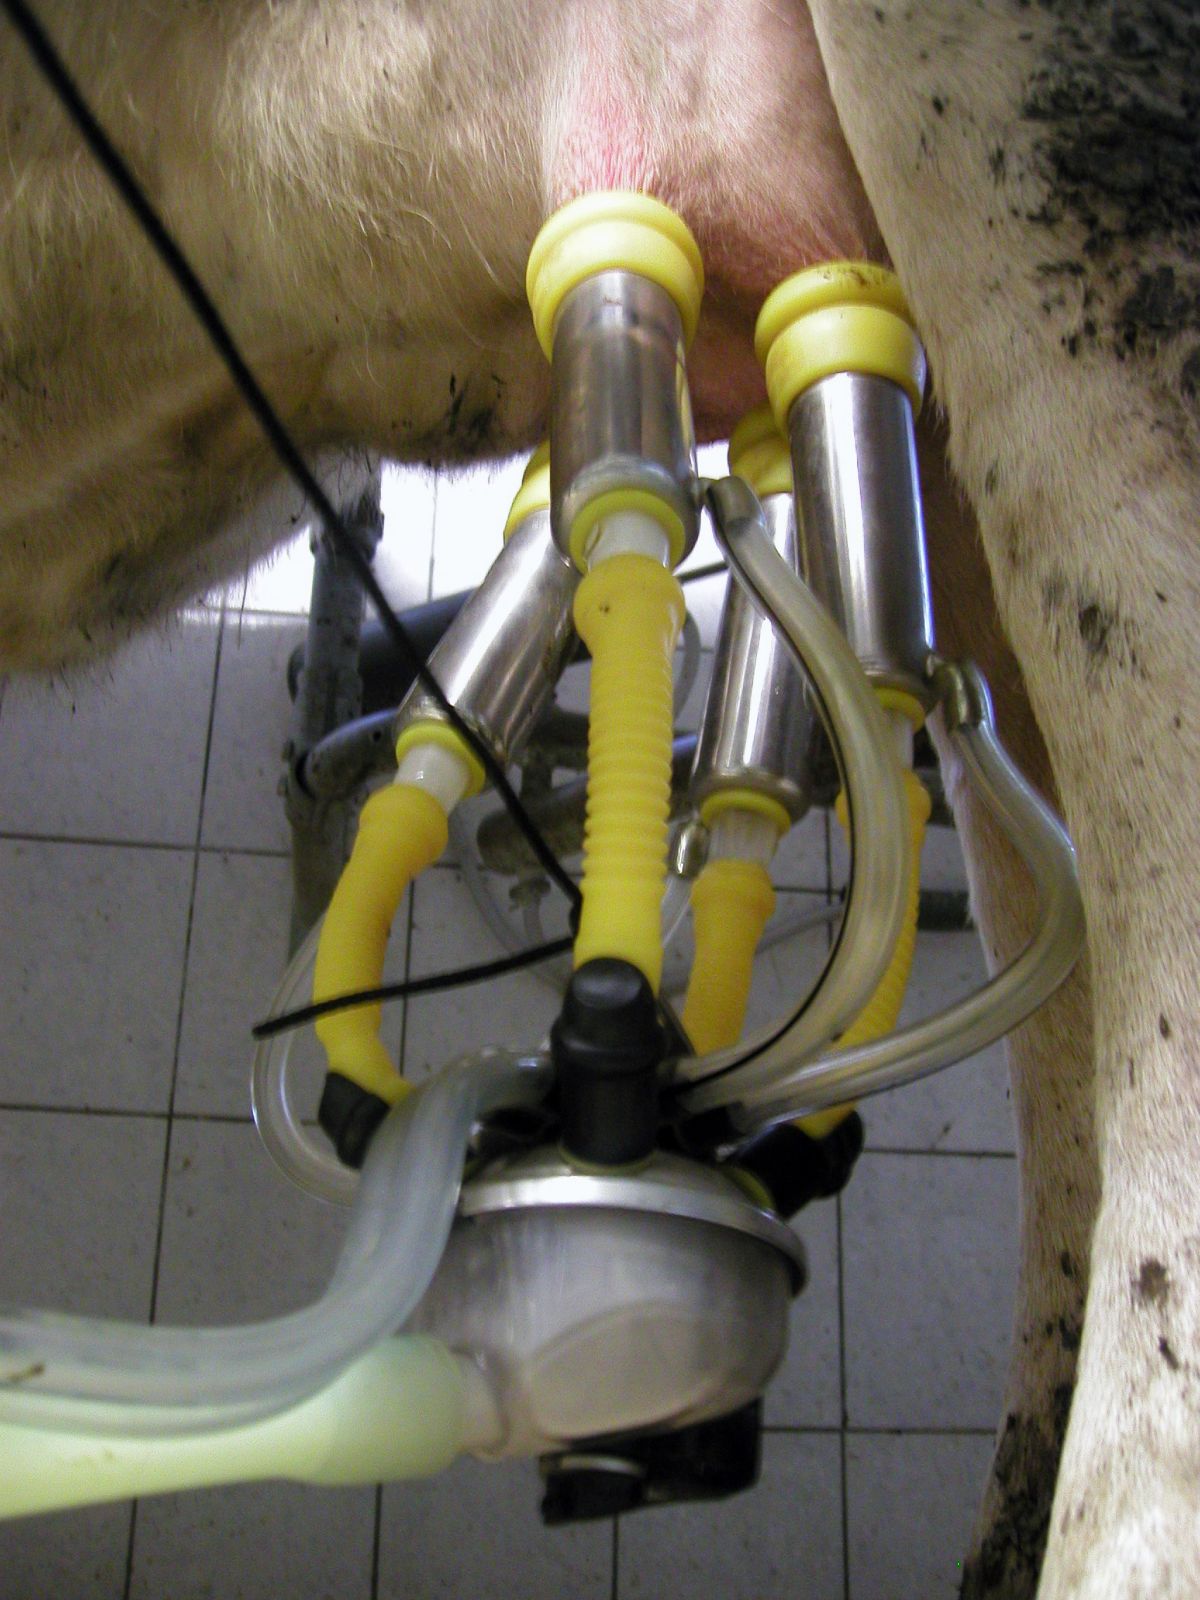 Robotik findet auch in der Tierhaltung Anwendung („Precision Livestock Farming“). Melkroboter, wie hier im Bild, übernehmen das Melken und das regelmäßige Waschen des Euters. Parameter wie Fett- und Eiweißgehalt in der Milch werden permanent überwacht. Dies fördert die Gesundheit des Tieres. 